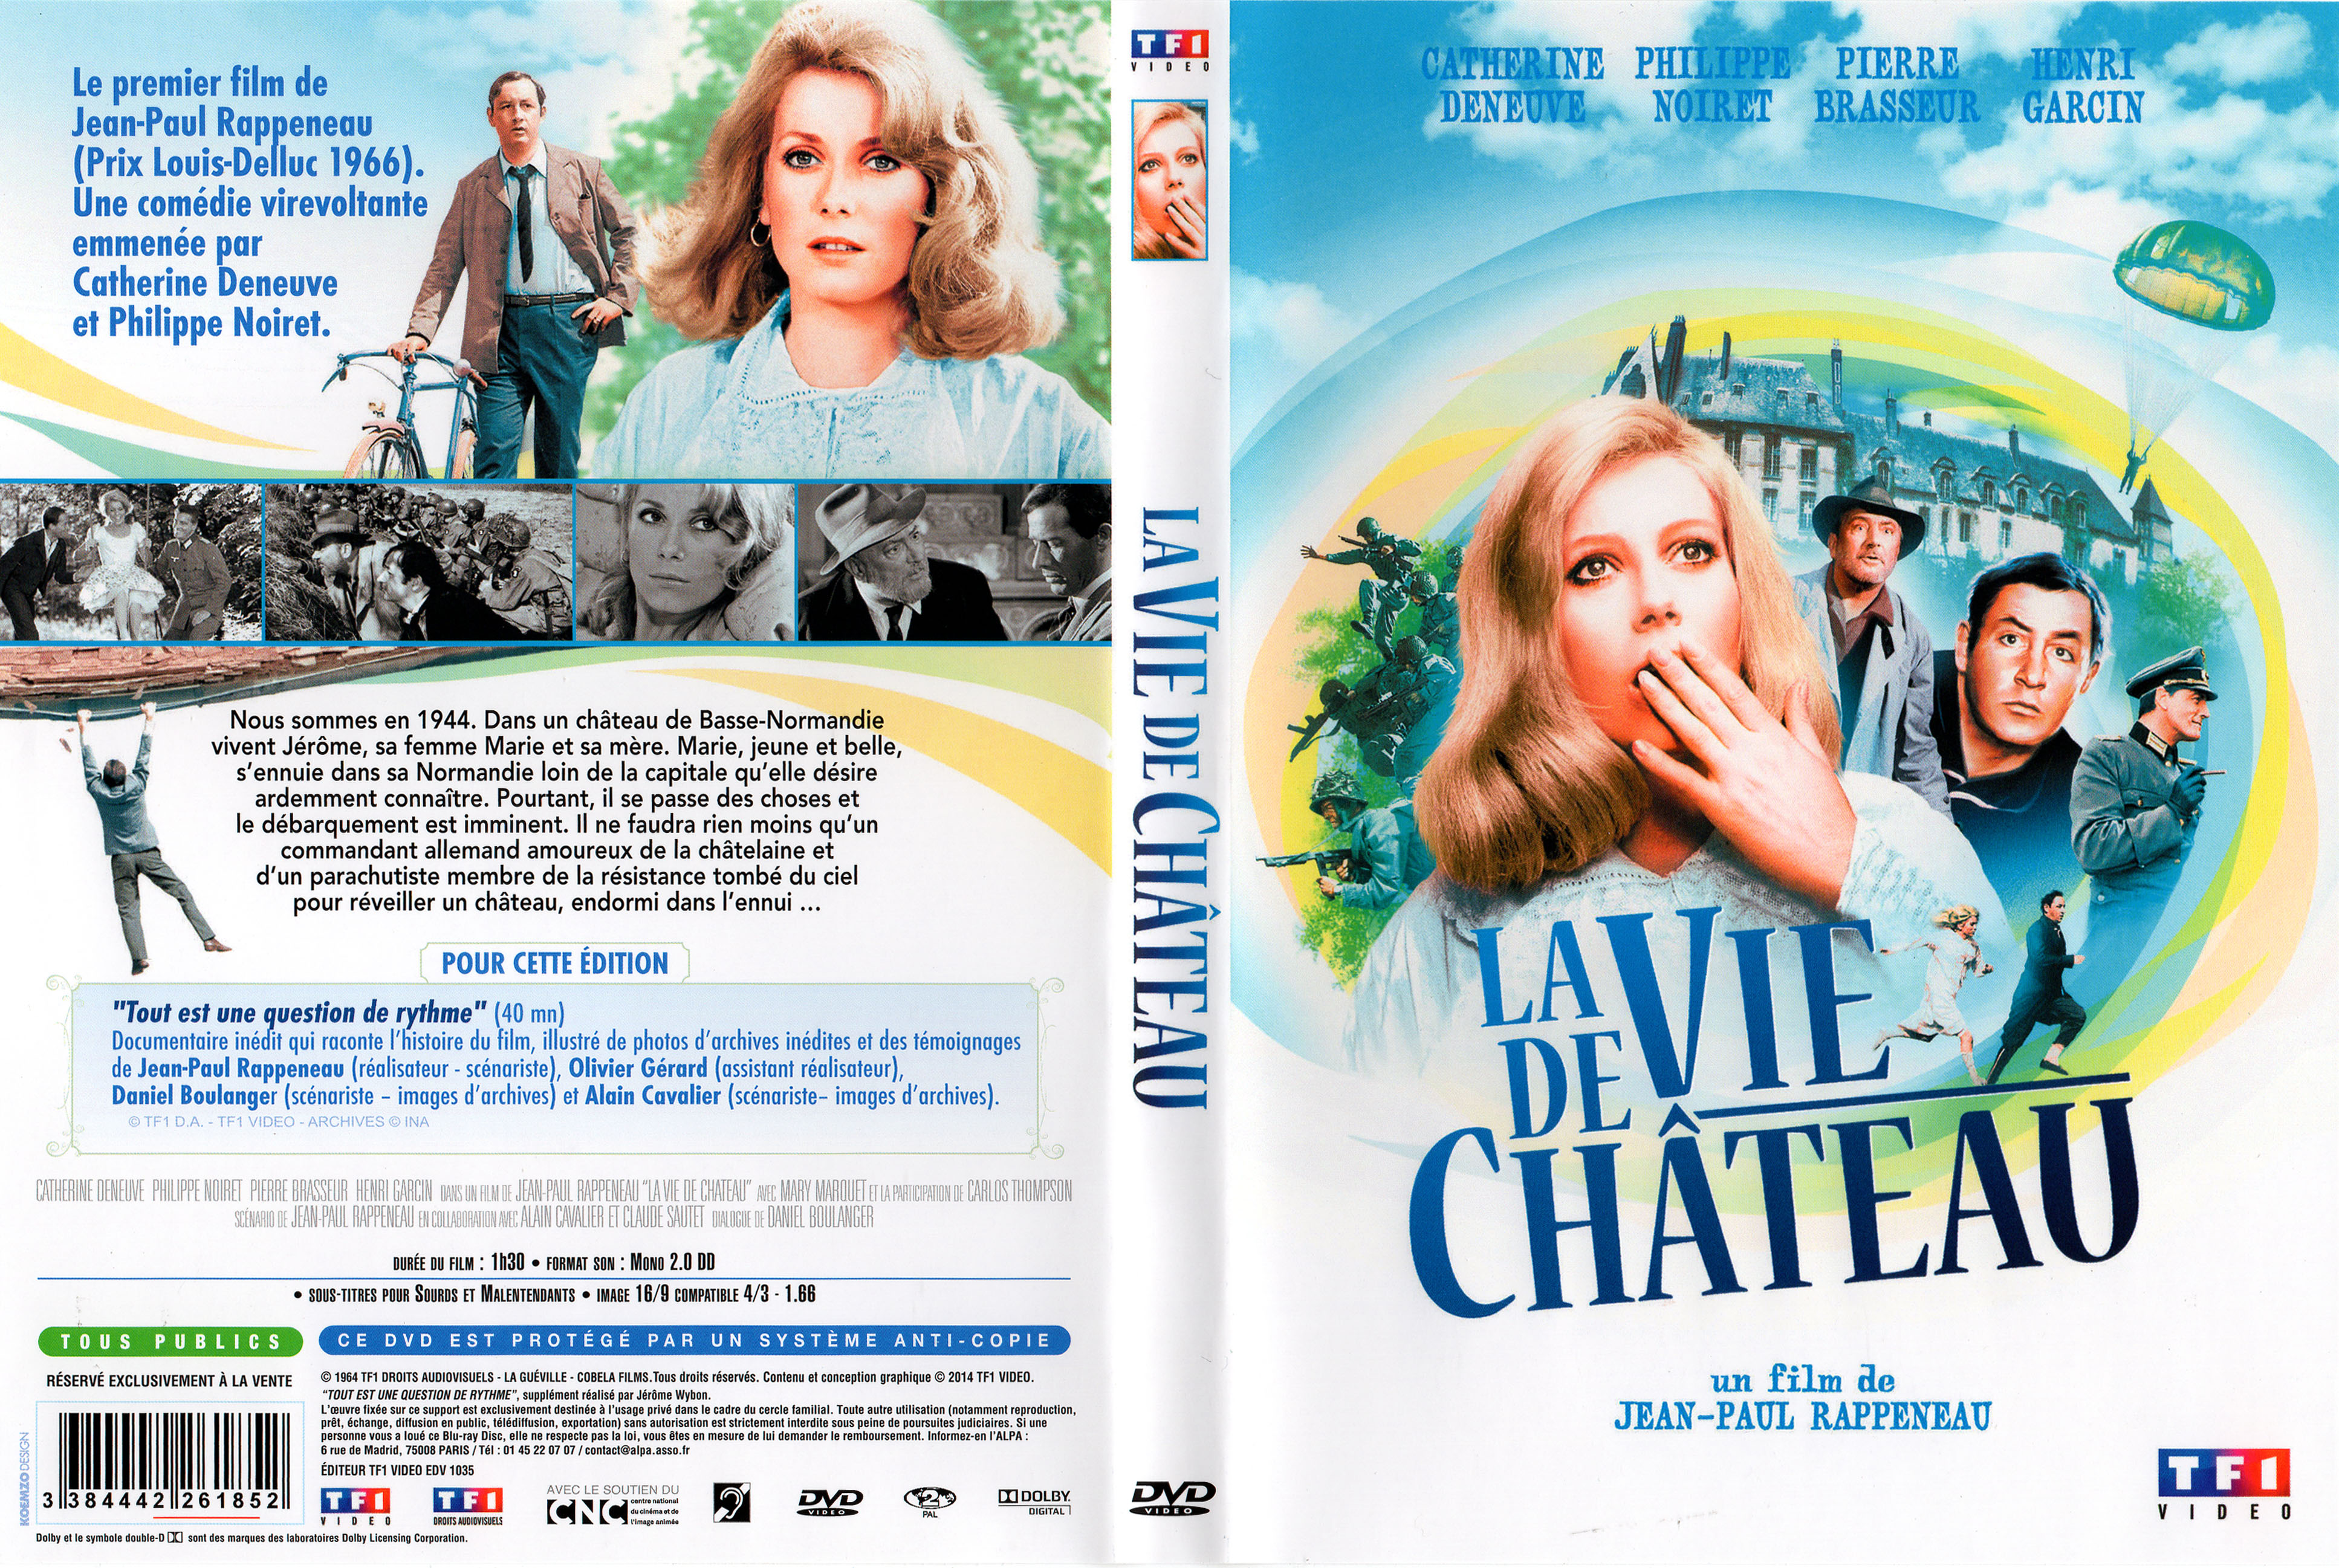 Jaquette DVD La vie de chateau v2